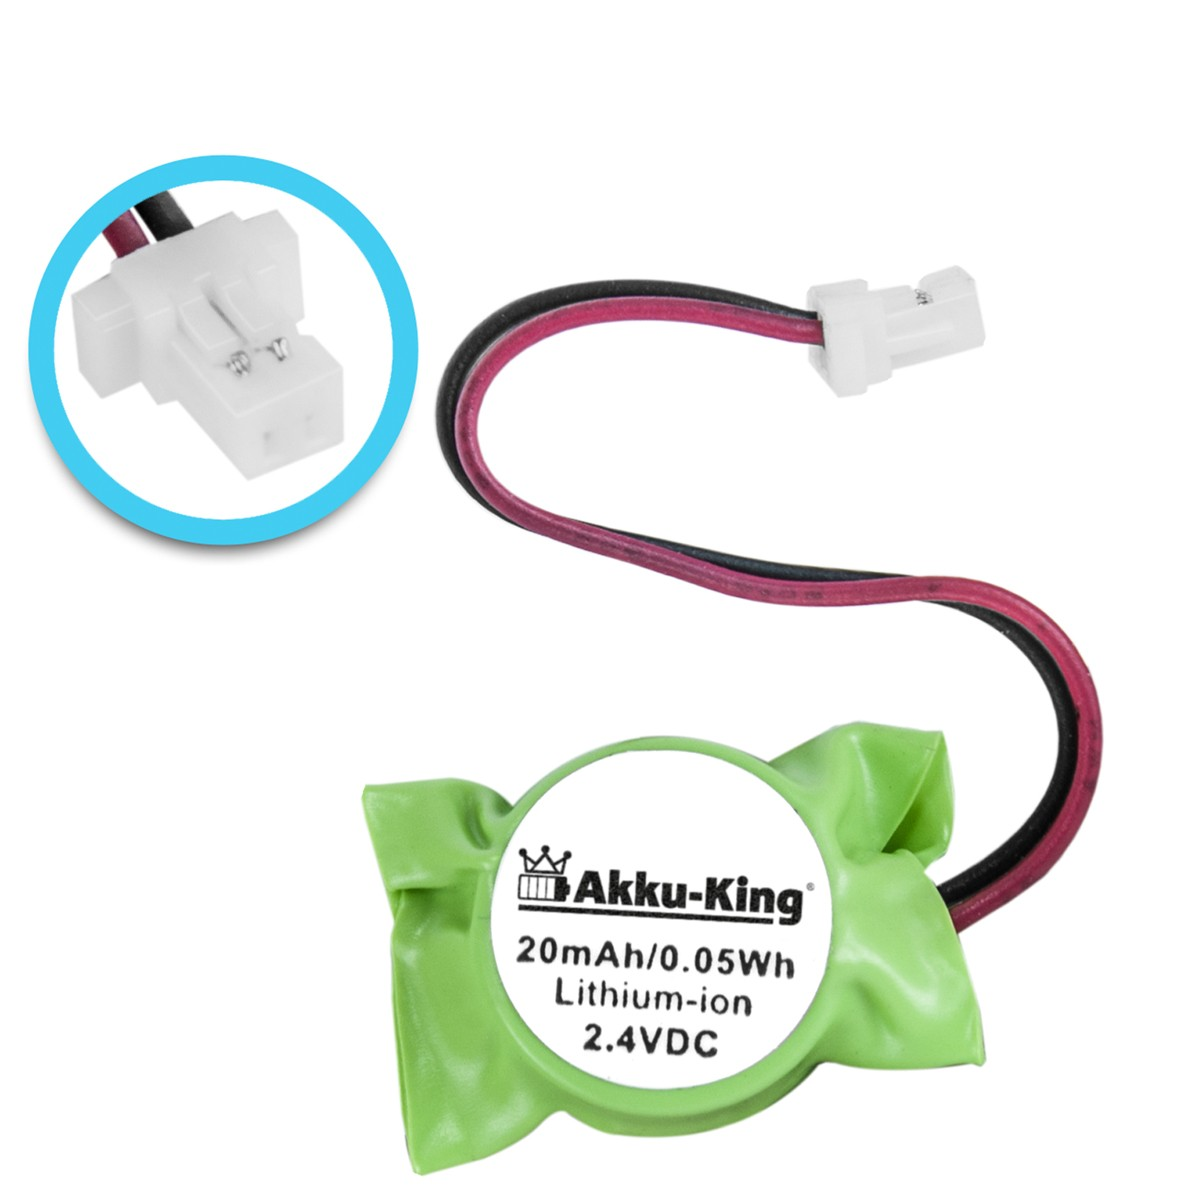 AKKU-KING Akku kompatibel mit Ni-MH Geräte-Akku, Symbol WT4000 2.4 Volt, 20mAh